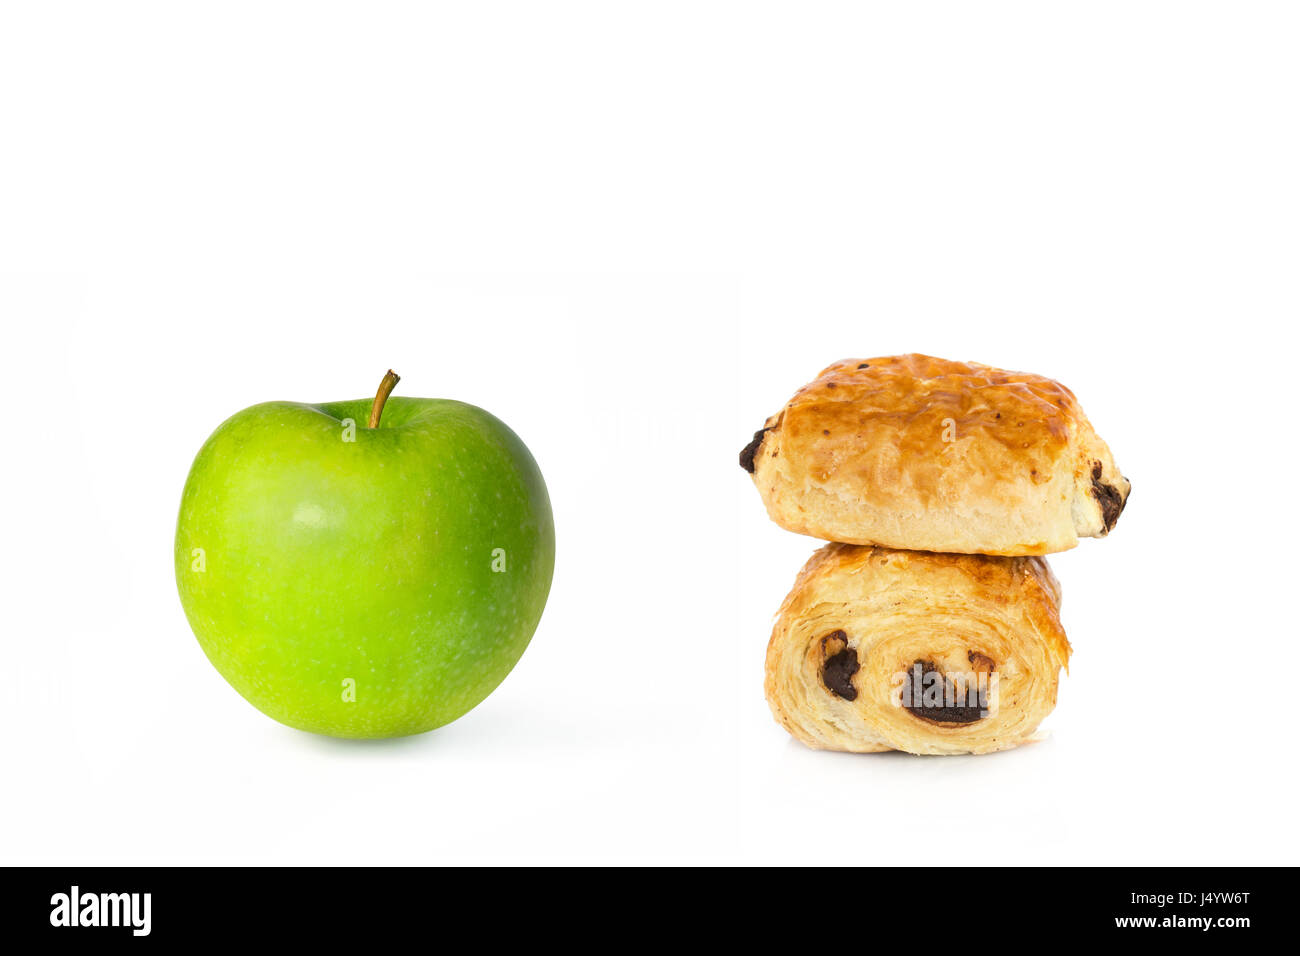 Croissant al cioccolato e una mela verde su sfondo bianco, buono o cattivo scelta alimentare concept Foto Stock